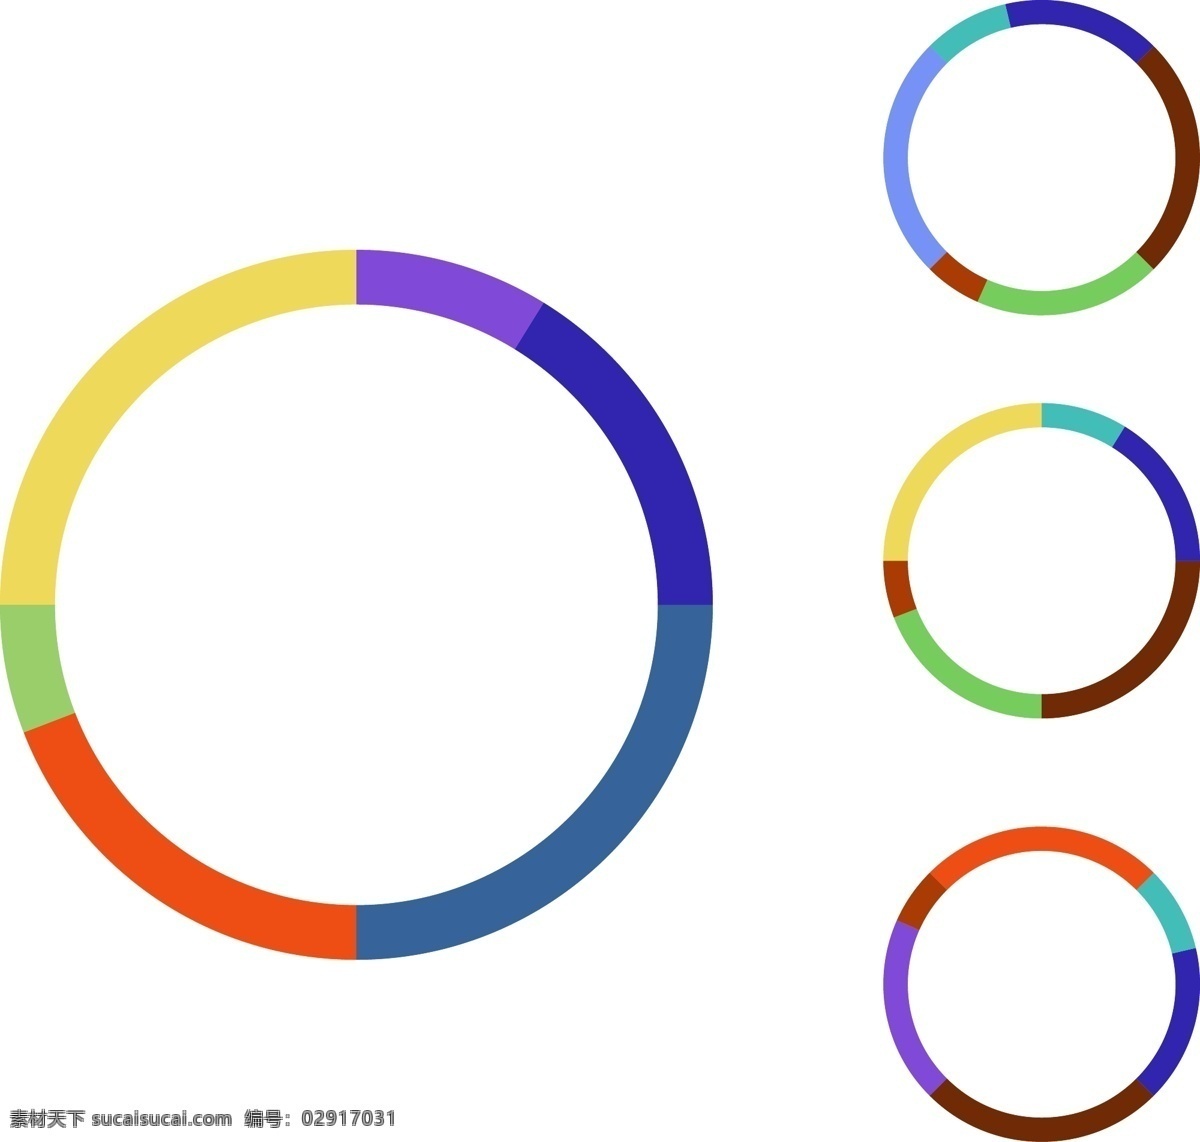 商务 矢量 数据分析 圆环 图 分析 ppt图表 彩色信息图表 图表 饼 箭头 环形图表 科技